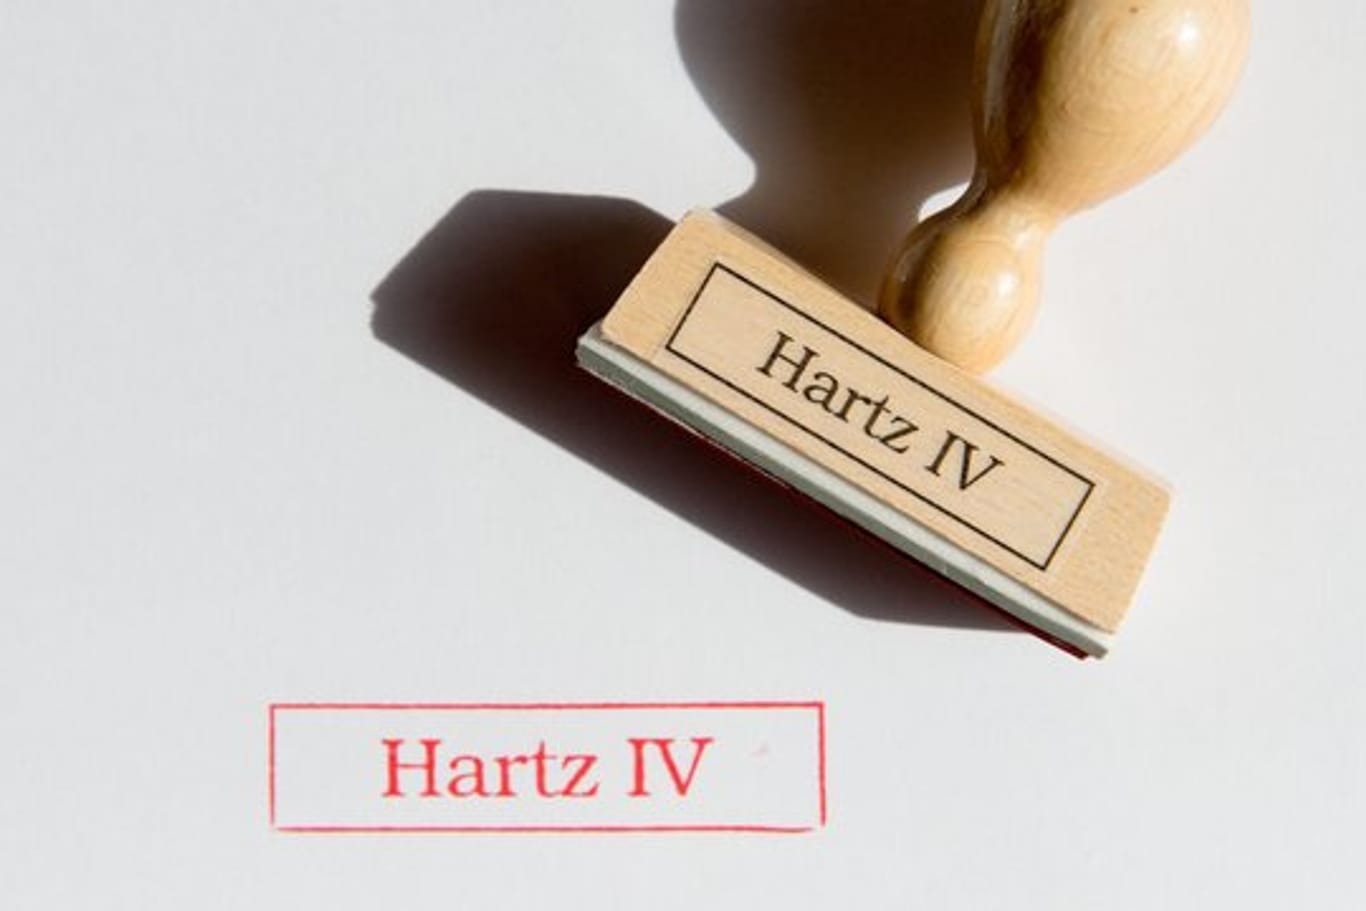 Wer vom Jobcenter zur Rückforderung von Hartz IV-Leistungen aufgefordert wird, kann dagegen Widerspruch einlegen.